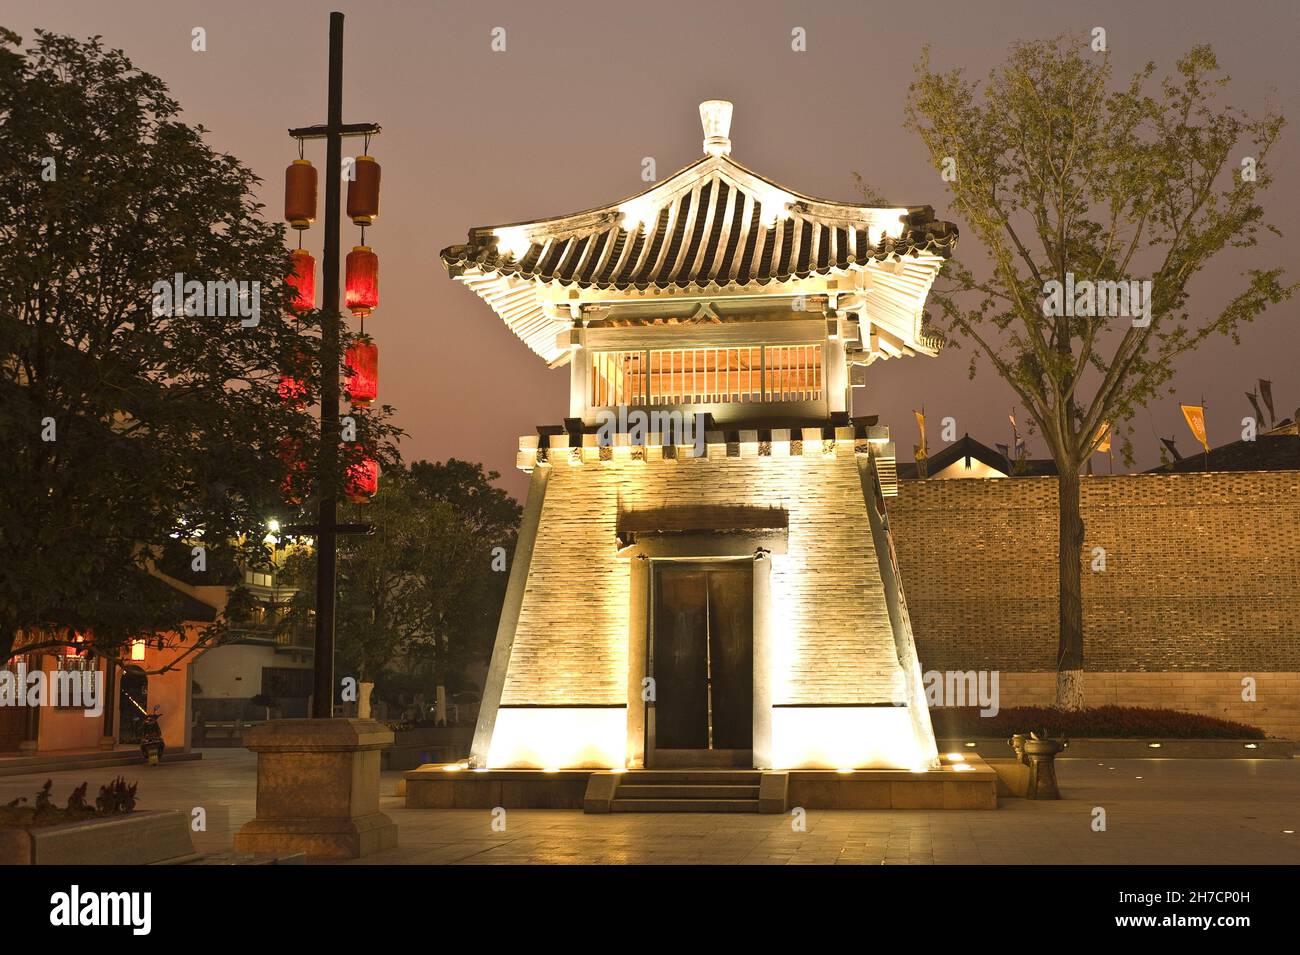 Yancheng Remains Museum at night, China, Changzhou Stock Photo